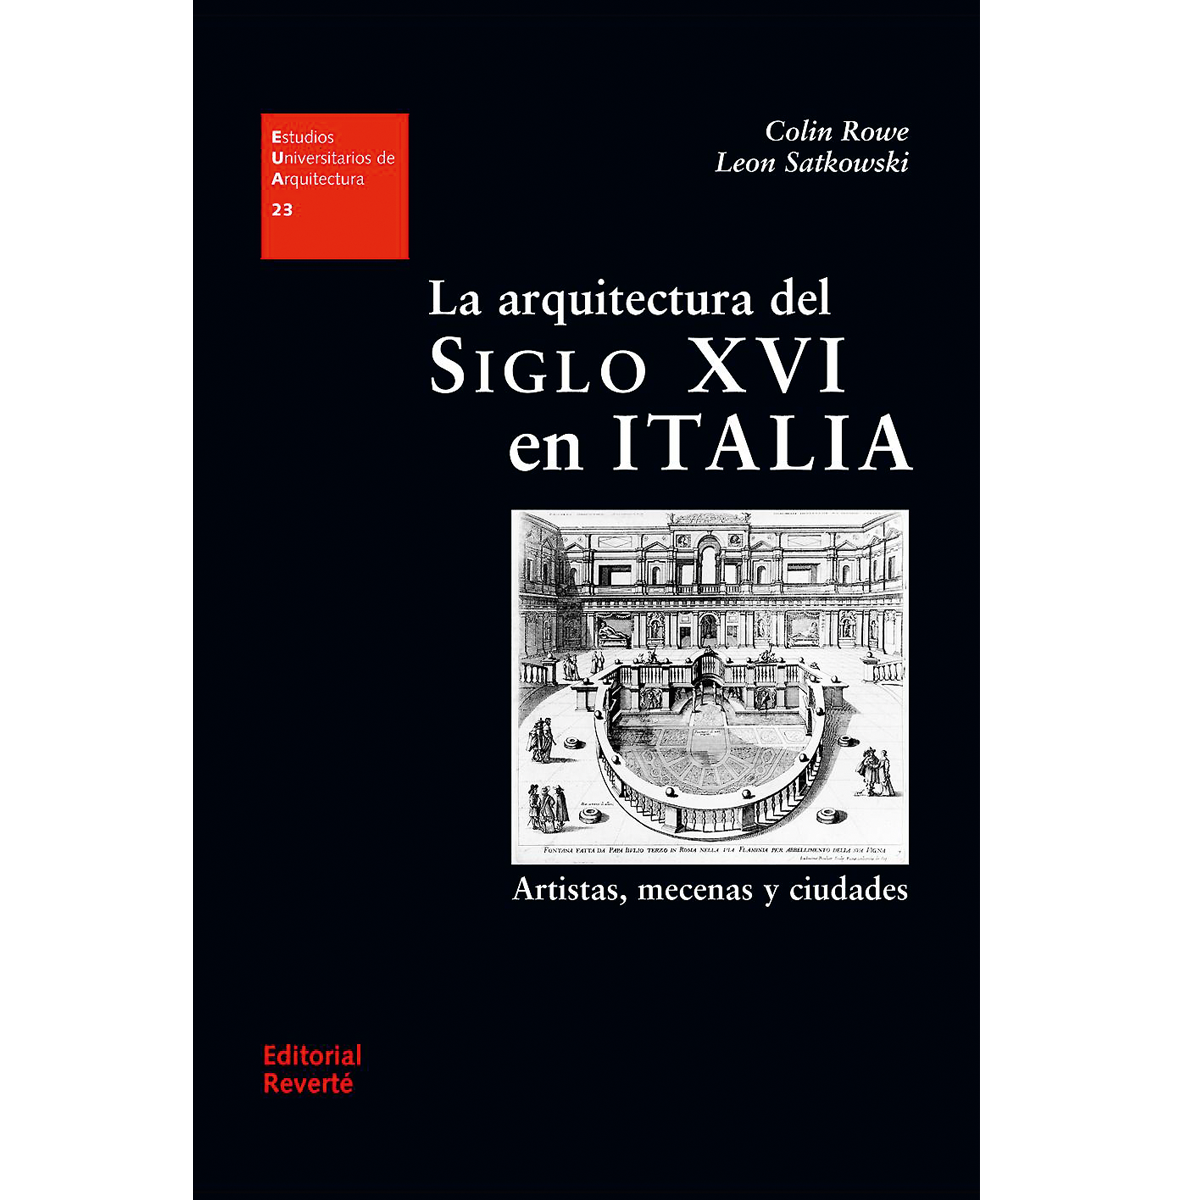 La arquitectura del siglo XVI en Italia: artistas, mecenas y ciudades